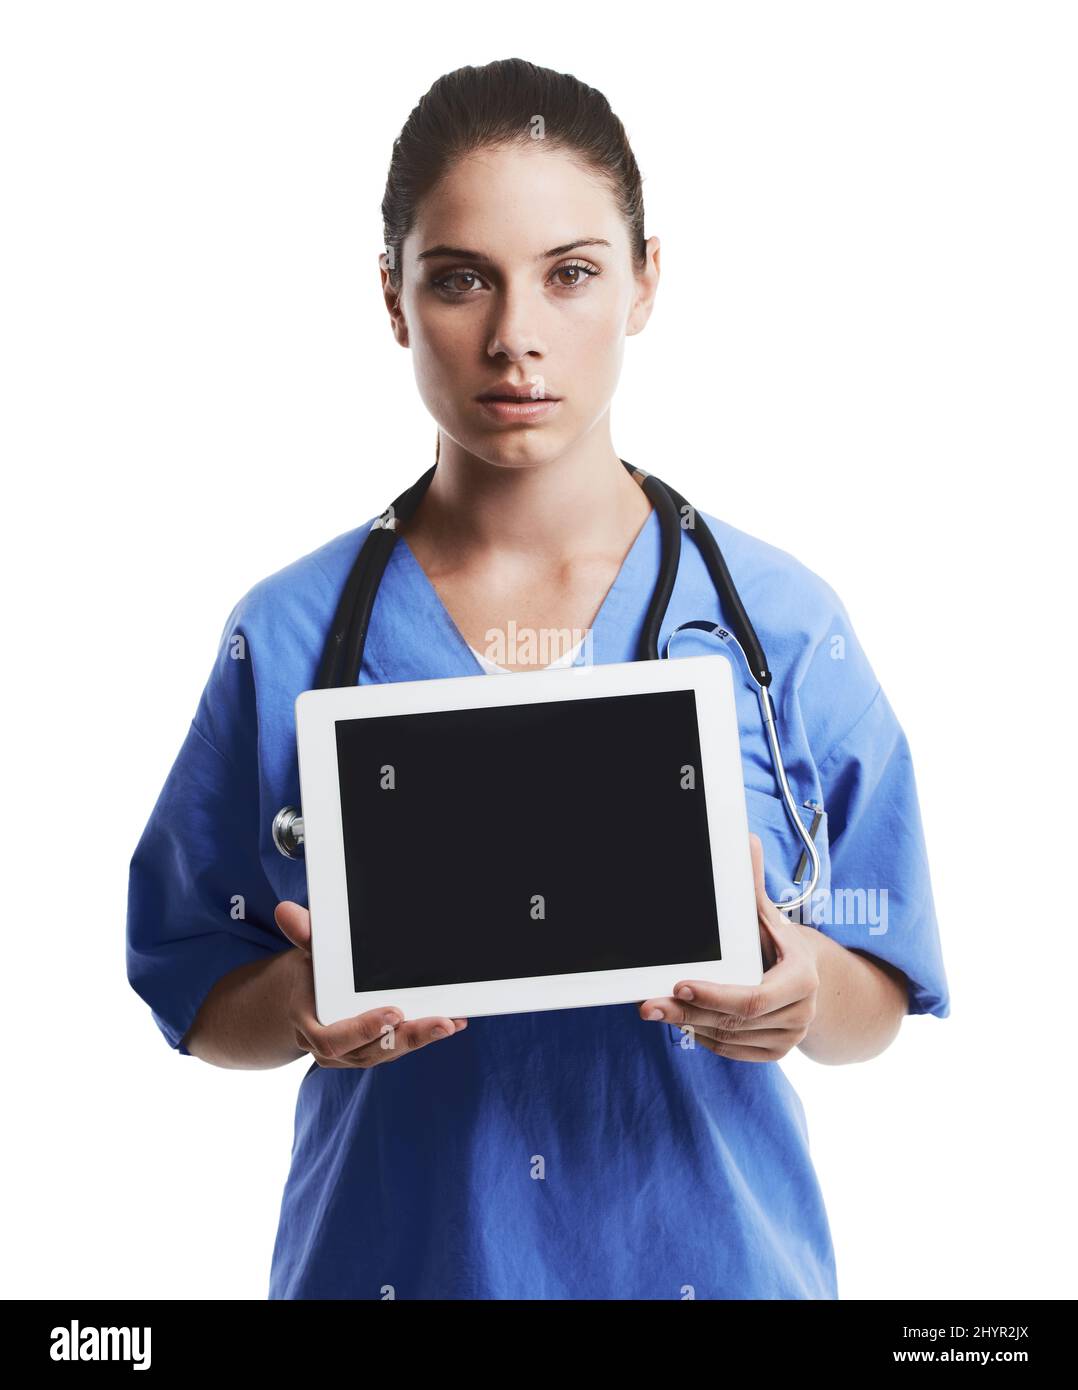 Préféreriez-vous une consultation médicale en ligne. Studio de photo d'un beau jeune médecin vous montrant l'écran vide d'une tablette numérique contre un Banque D'Images